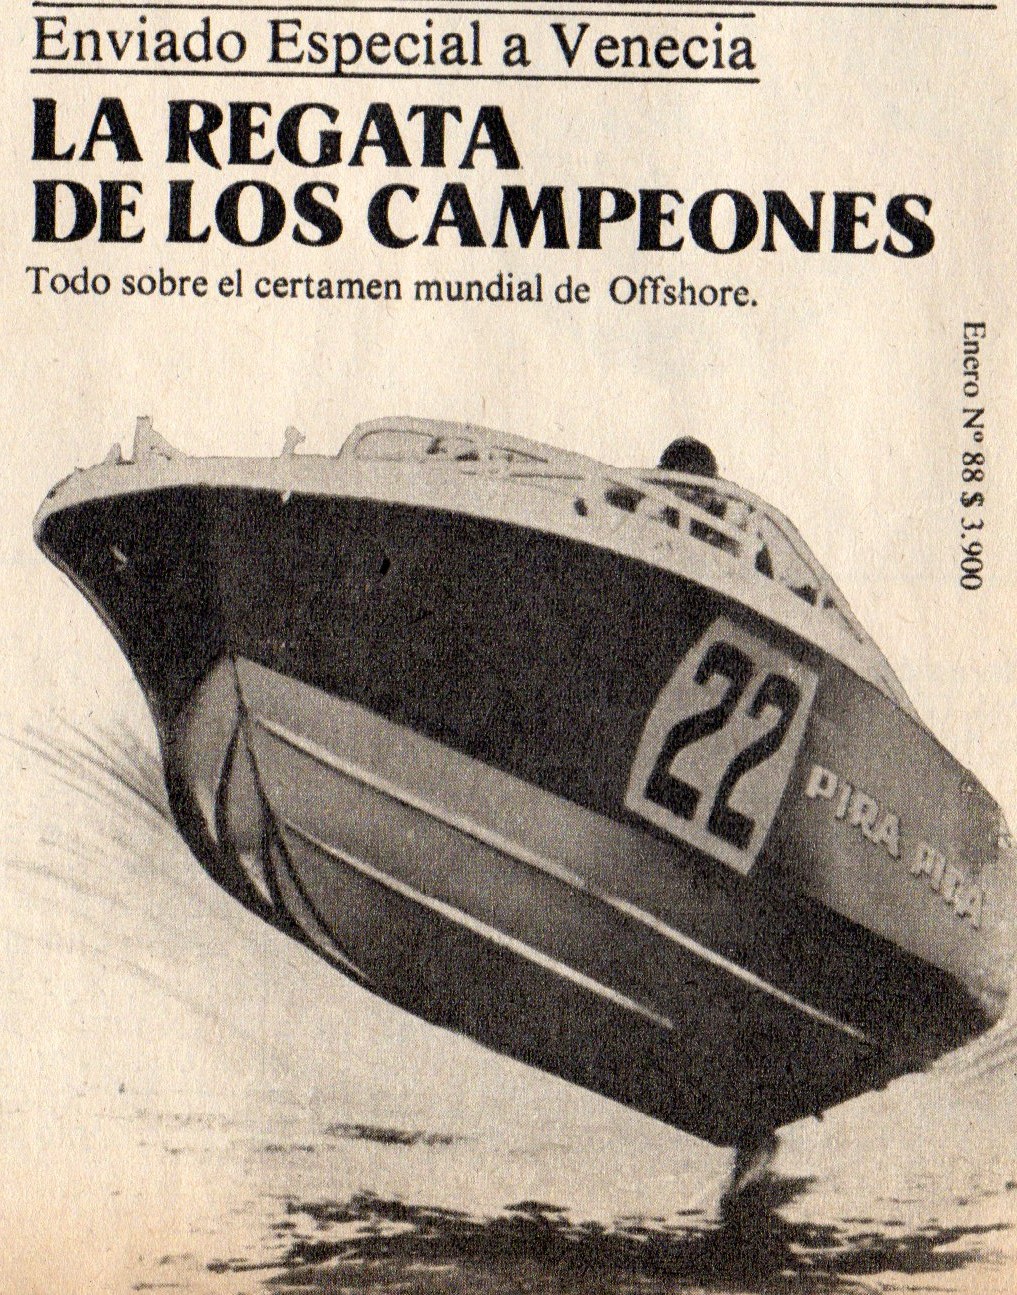 Motonautica Argentina en el Recuerdo